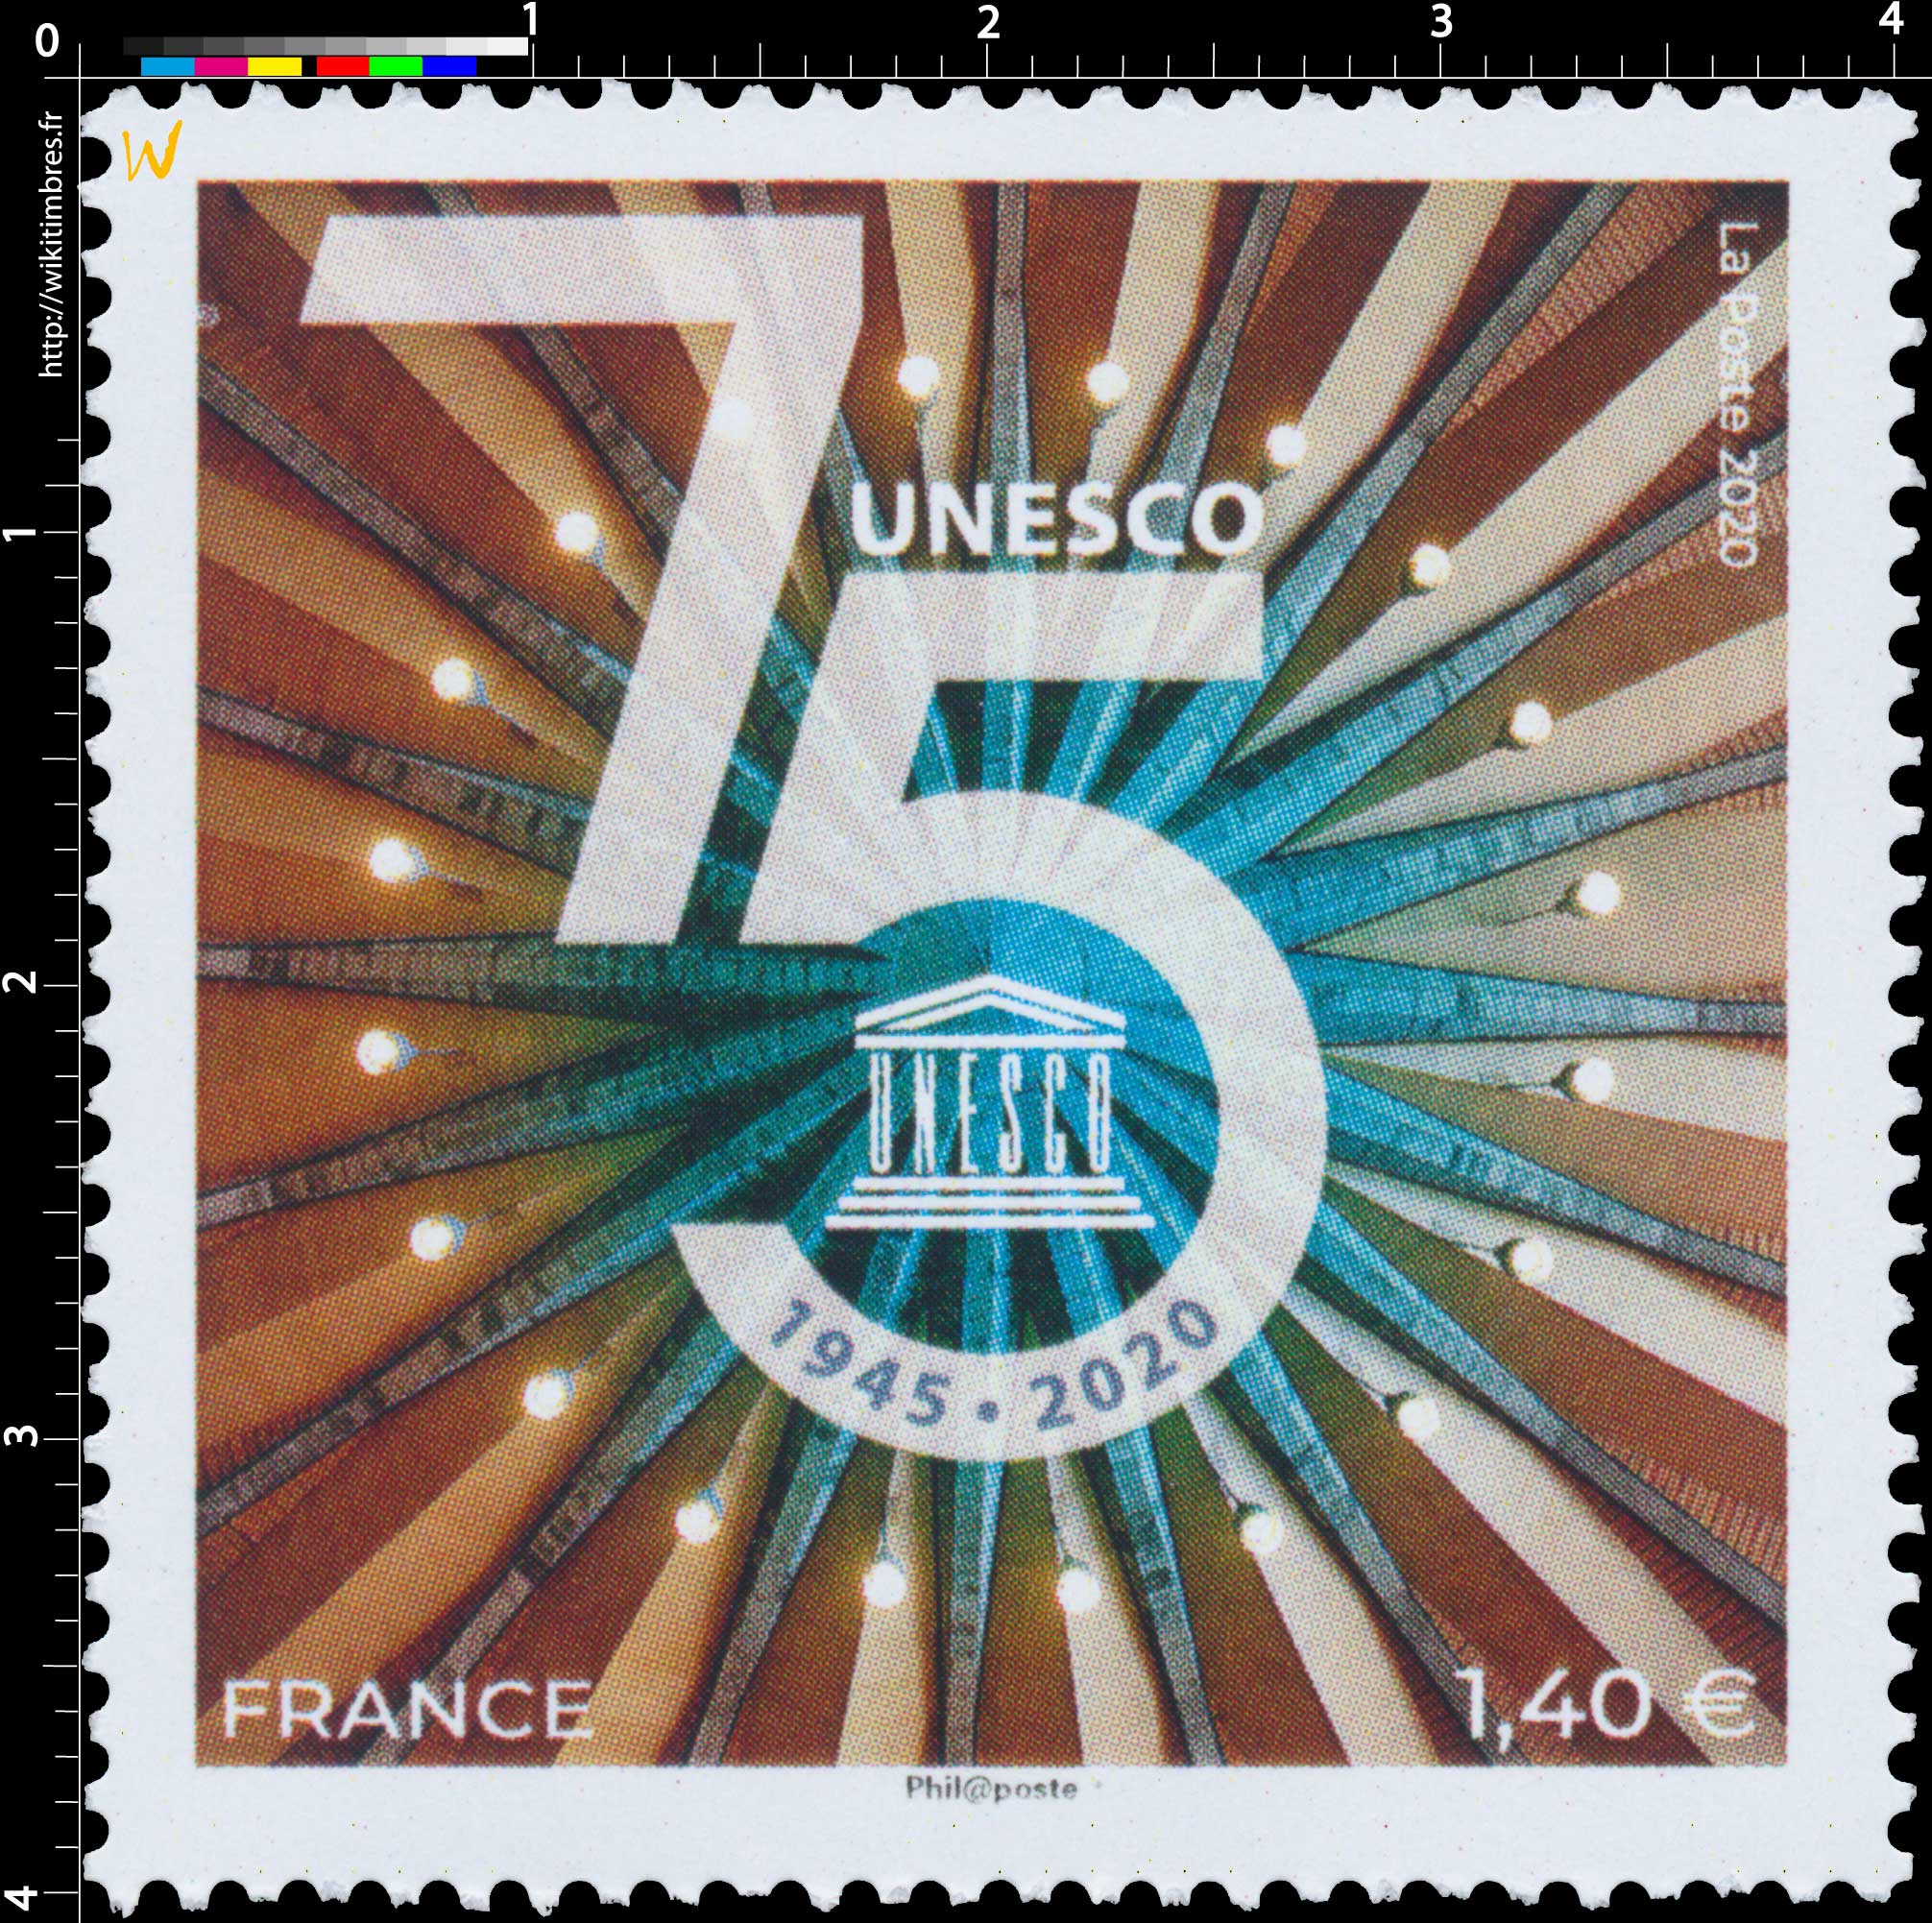 1945 – 2020 75e anniversaire de l’UNESCO